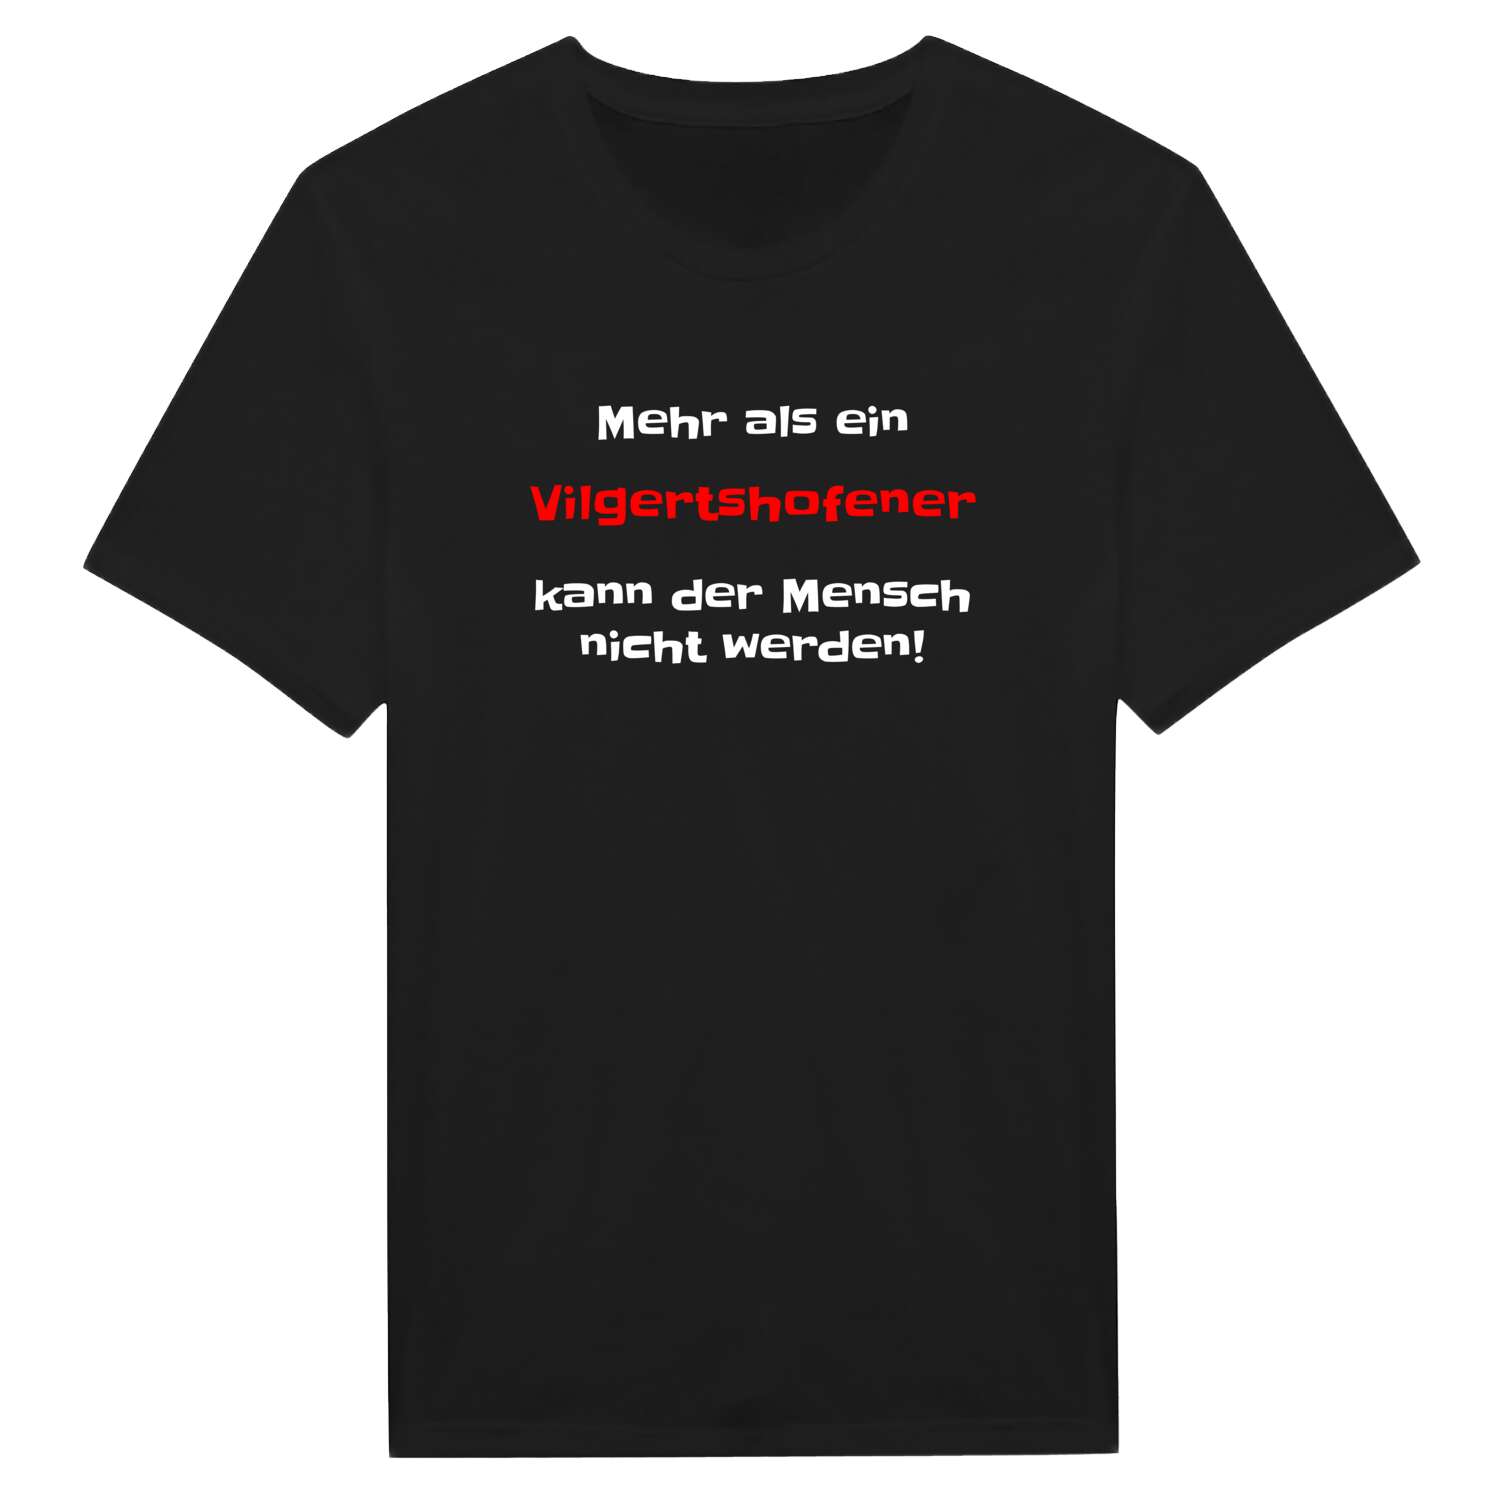 Vilgertshofen T-Shirt »Mehr als ein«